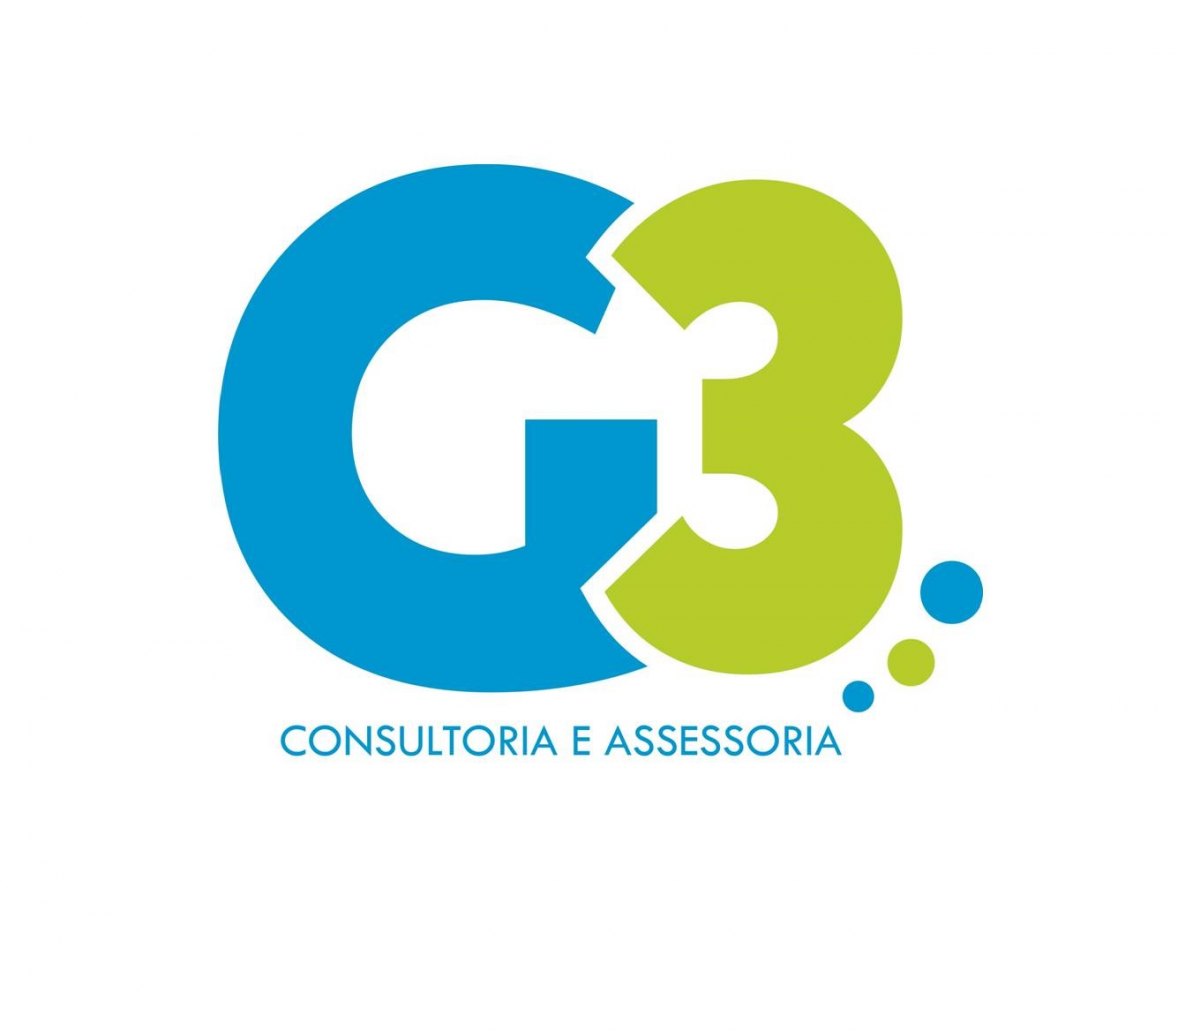 G3 CONSULTORIA E ASSESSORIA